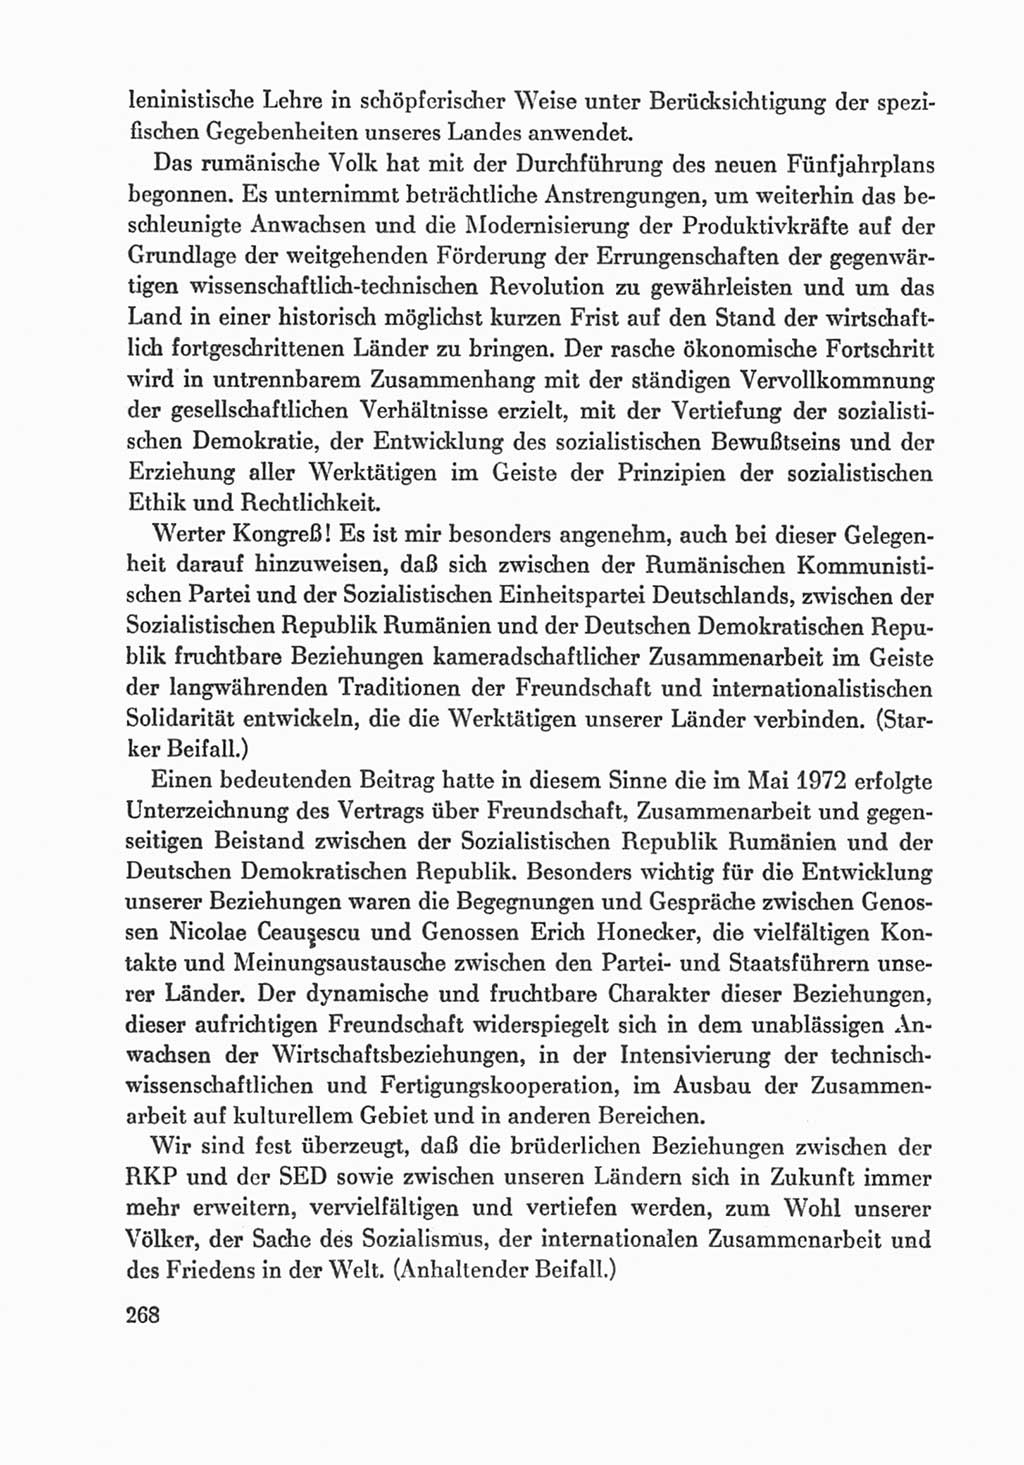 Protokoll der Verhandlungen des Ⅸ. Parteitages der Sozialistischen Einheitspartei Deutschlands (SED) [Deutsche Demokratische Republik (DDR)] 1976, Band 1, Seite 268 (Prot. Verh. Ⅸ. PT SED DDR 1976, Bd. 1, S. 268)